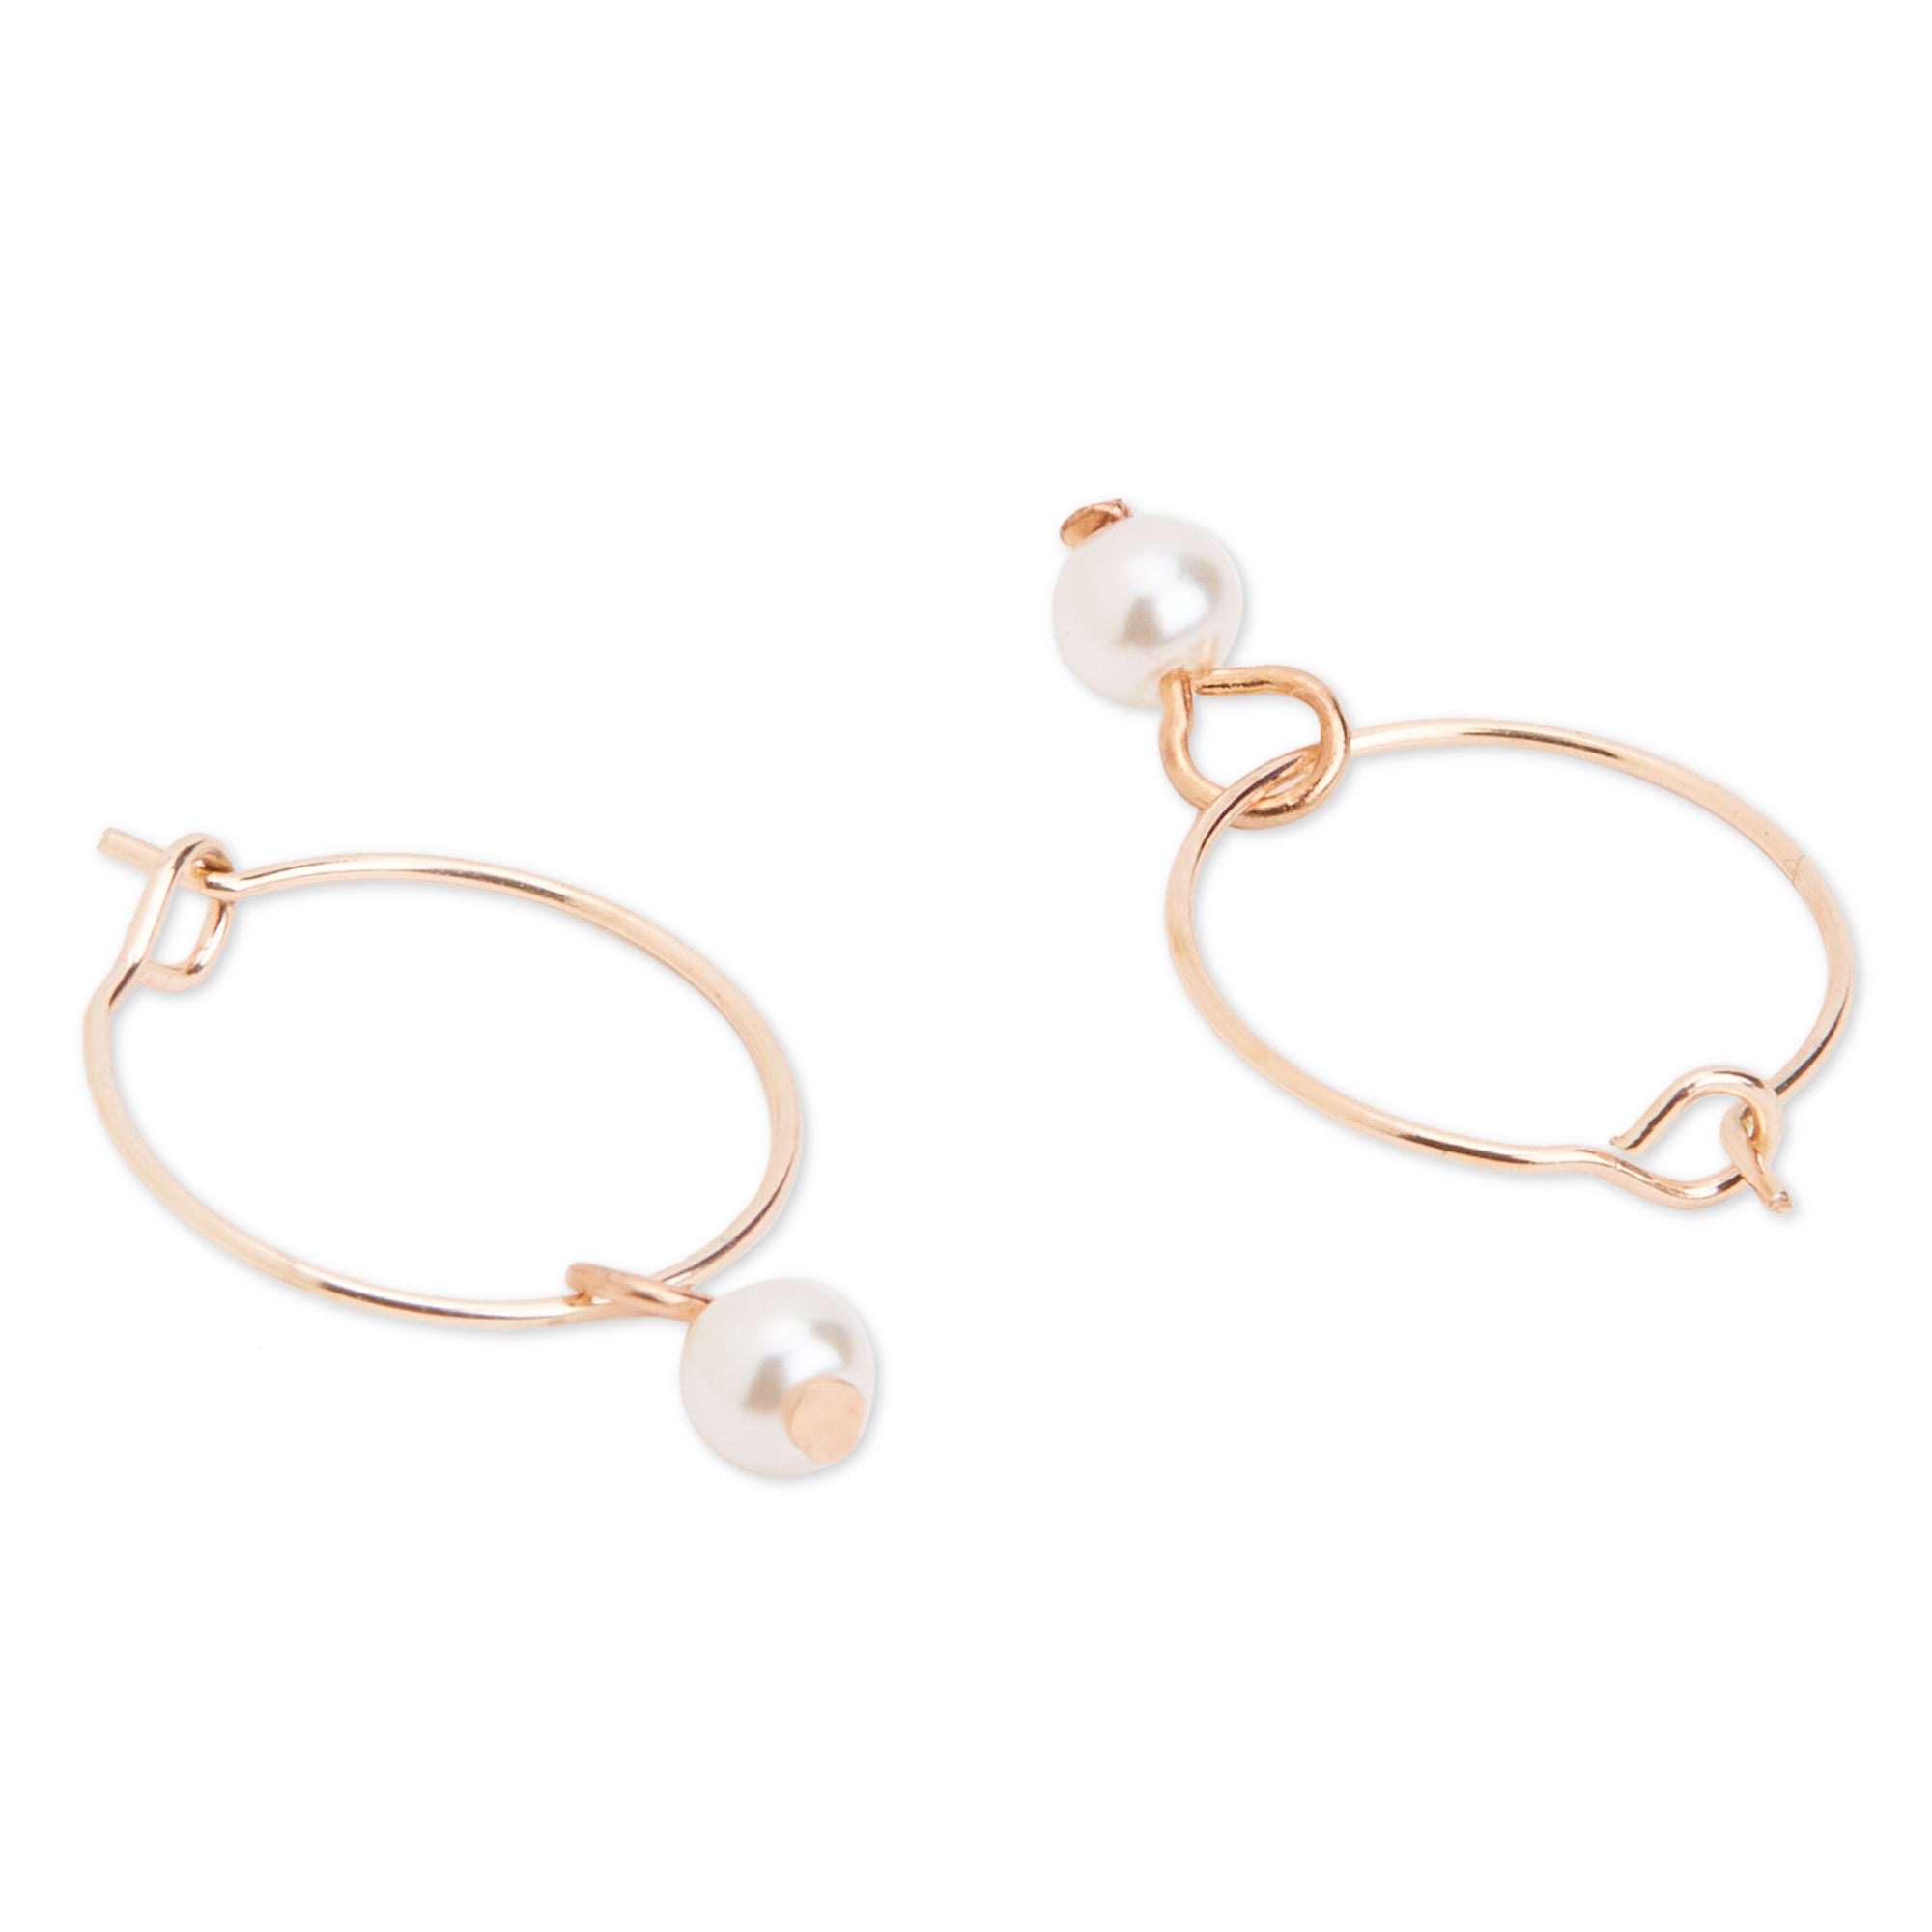 Accessorize London Women's Rose Gold Set of 3 Simple Hoop Earring